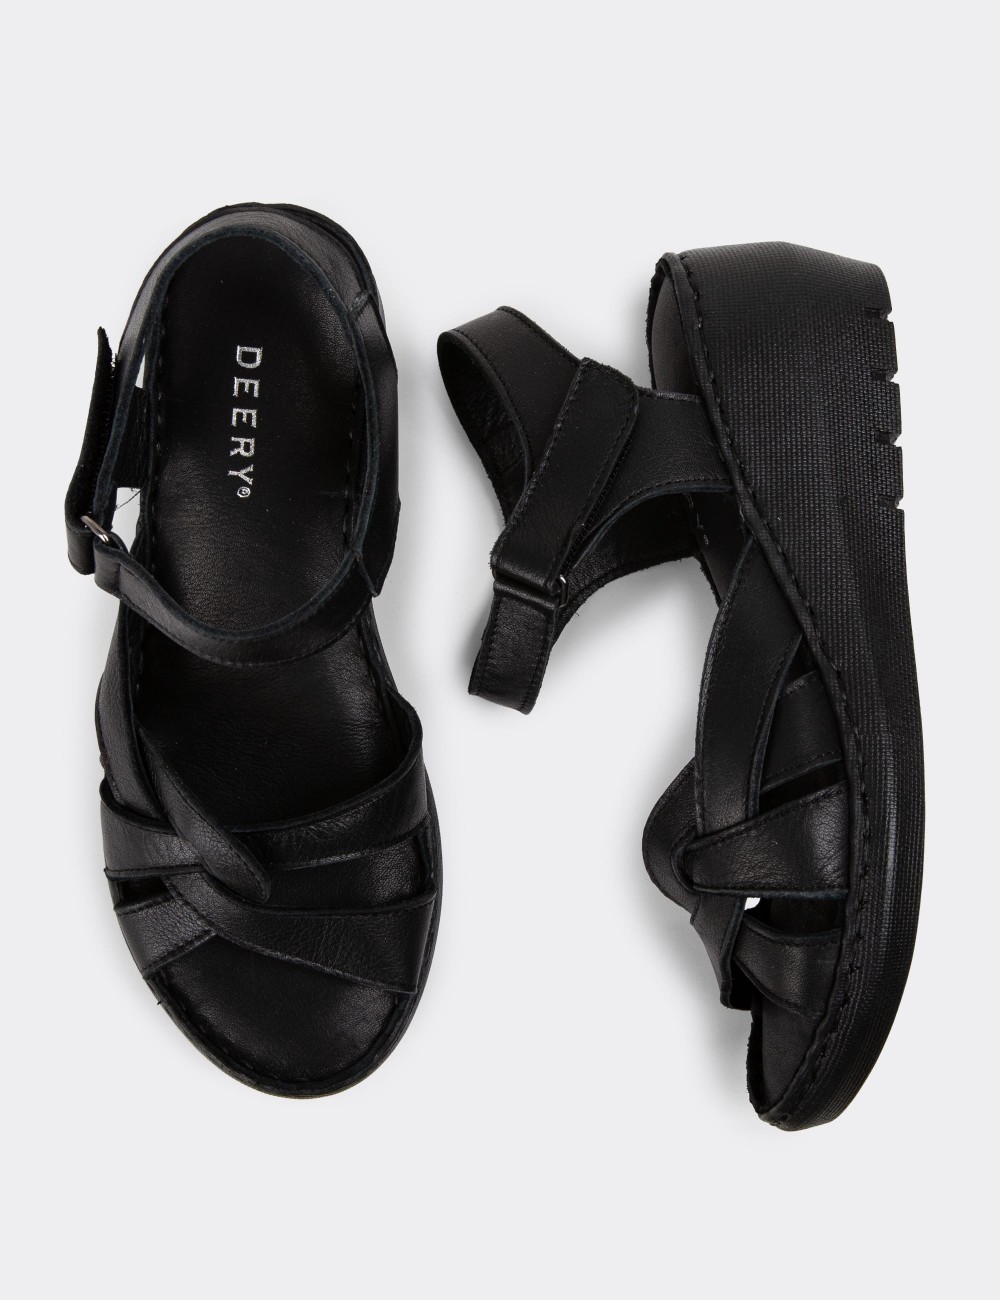 Black Leather Sandals - SE141ZSYHC01